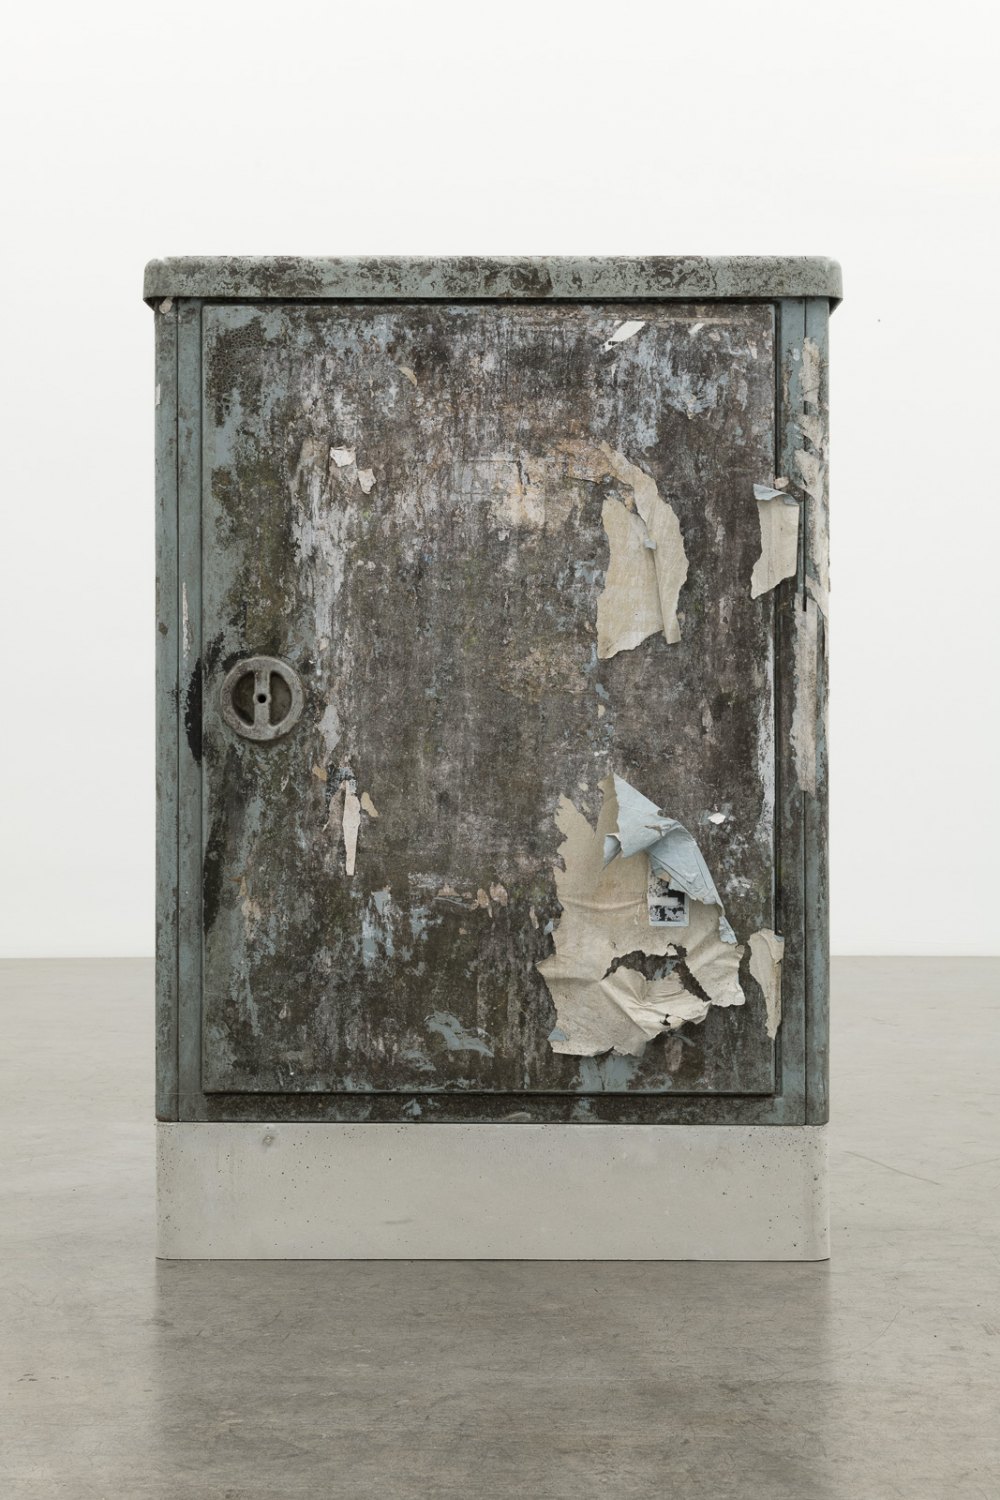 Klara Lidén  Untitled, 2021  Junction box, concrete 111 x 75 x 32 cm  